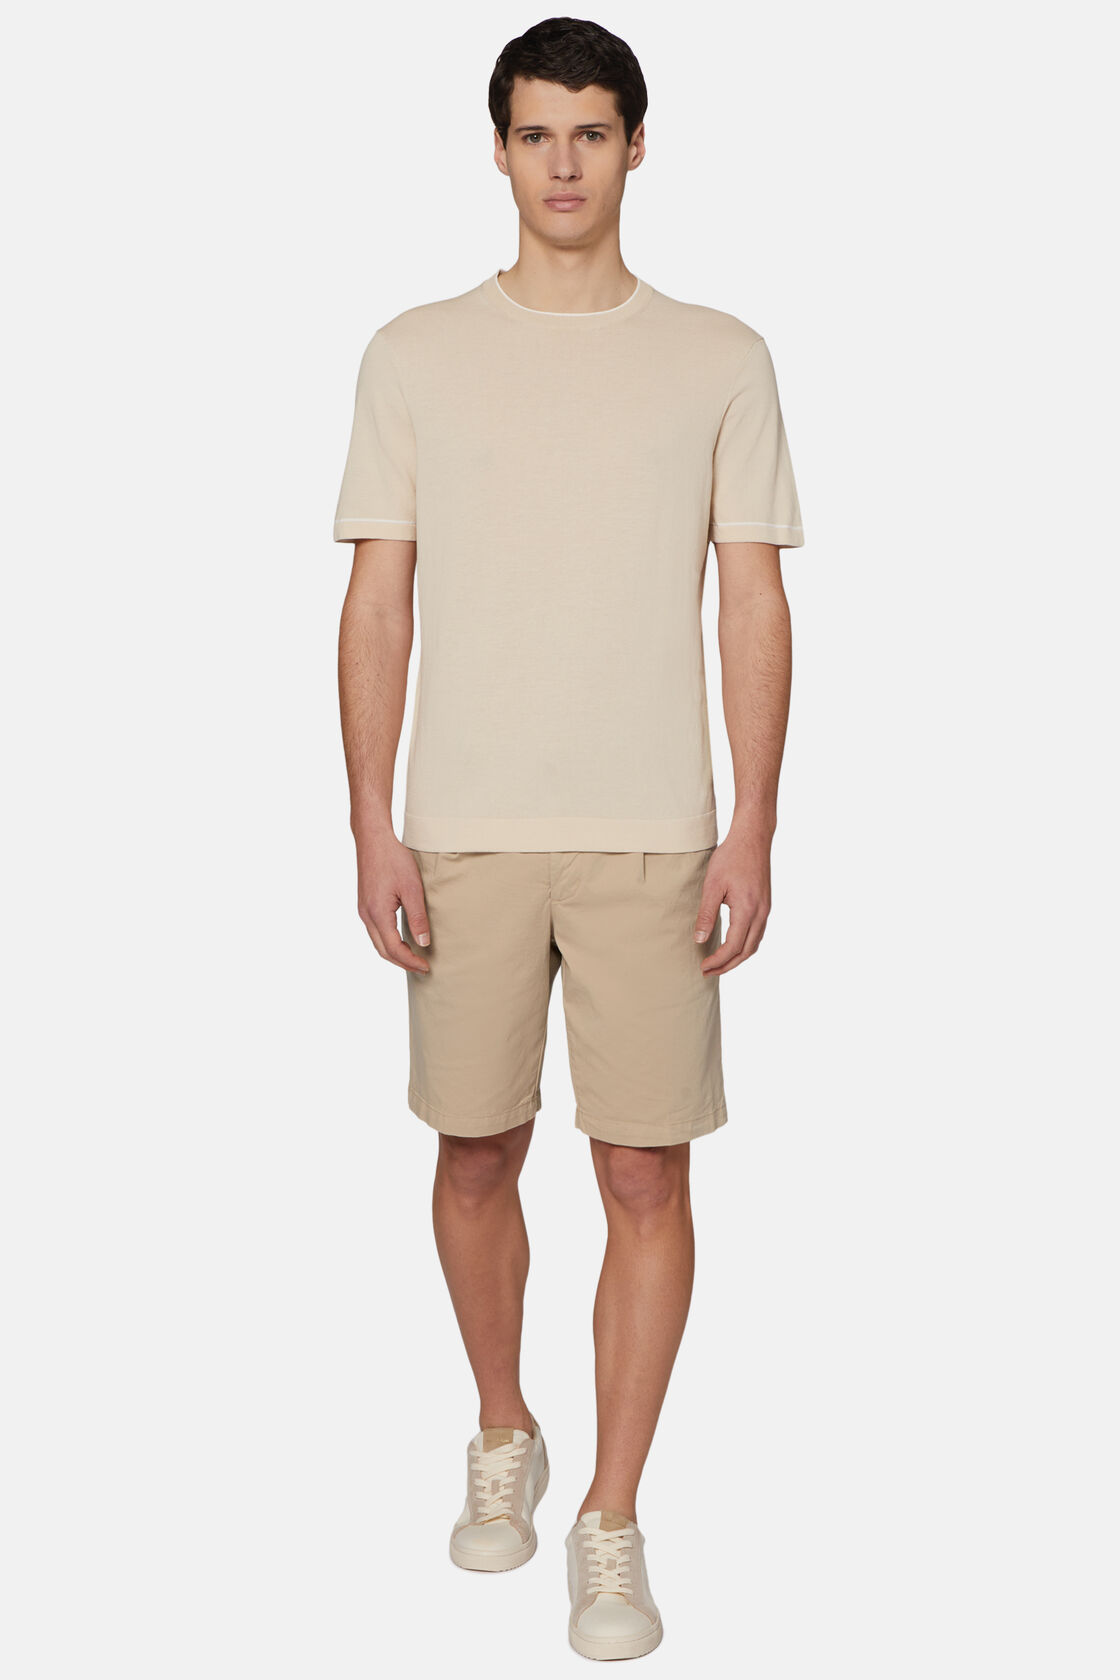 Πλεκτό κοντομάνικο μπλουζάκι από βαμβακερό κρεπ στο χρώμα της άμμου, Sand, hi-res